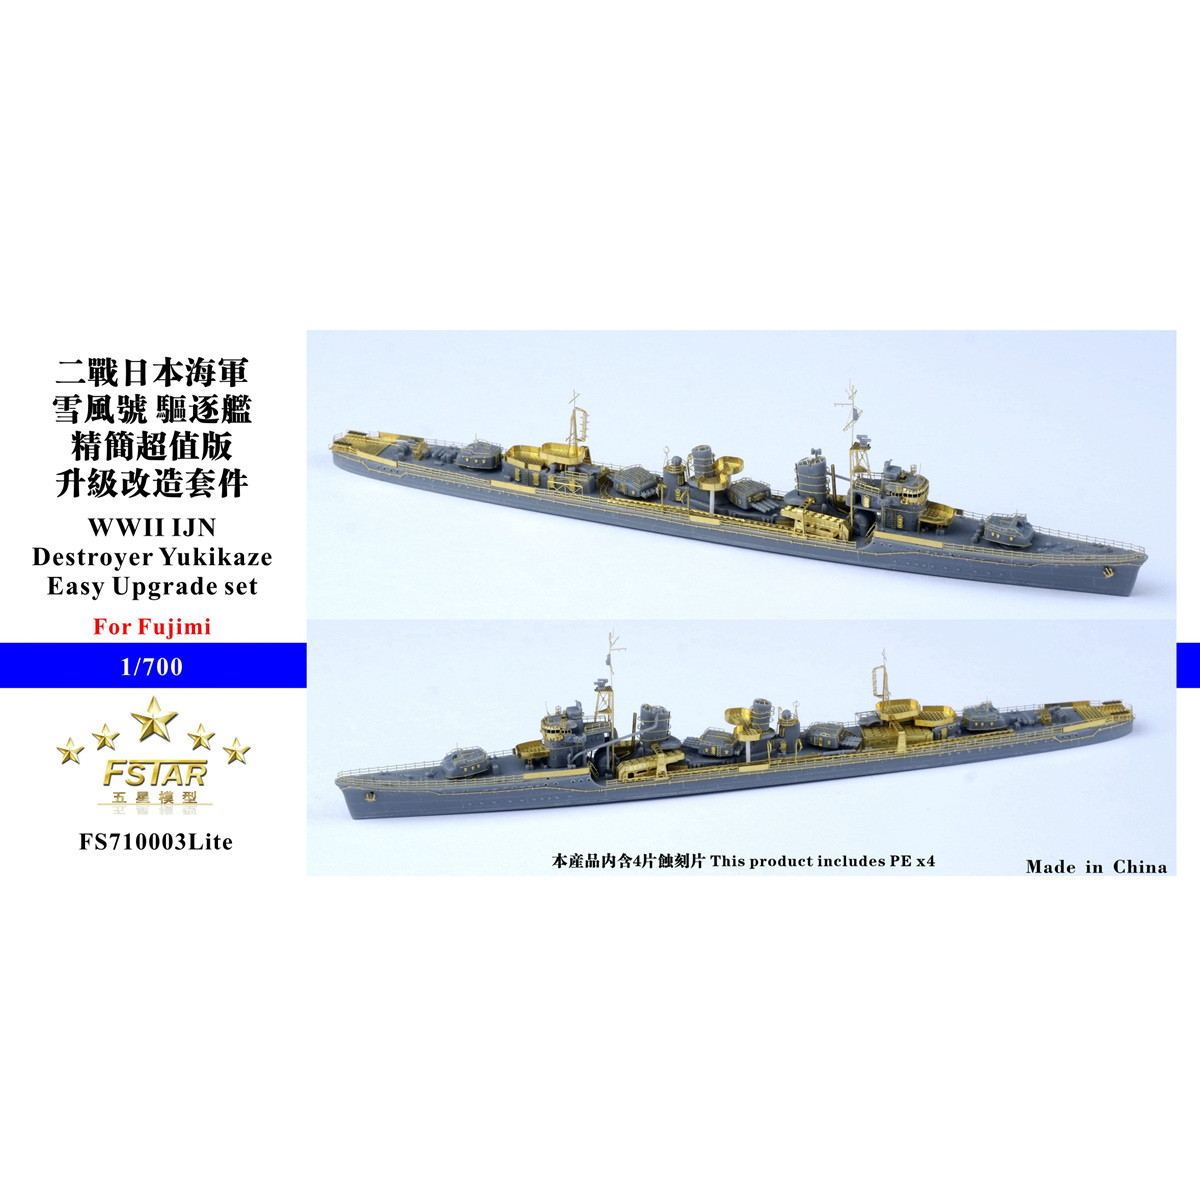 【新製品】FS710003Lite 日本海軍 陽炎型駆逐艦 雪風用 イージーアップグレードセット